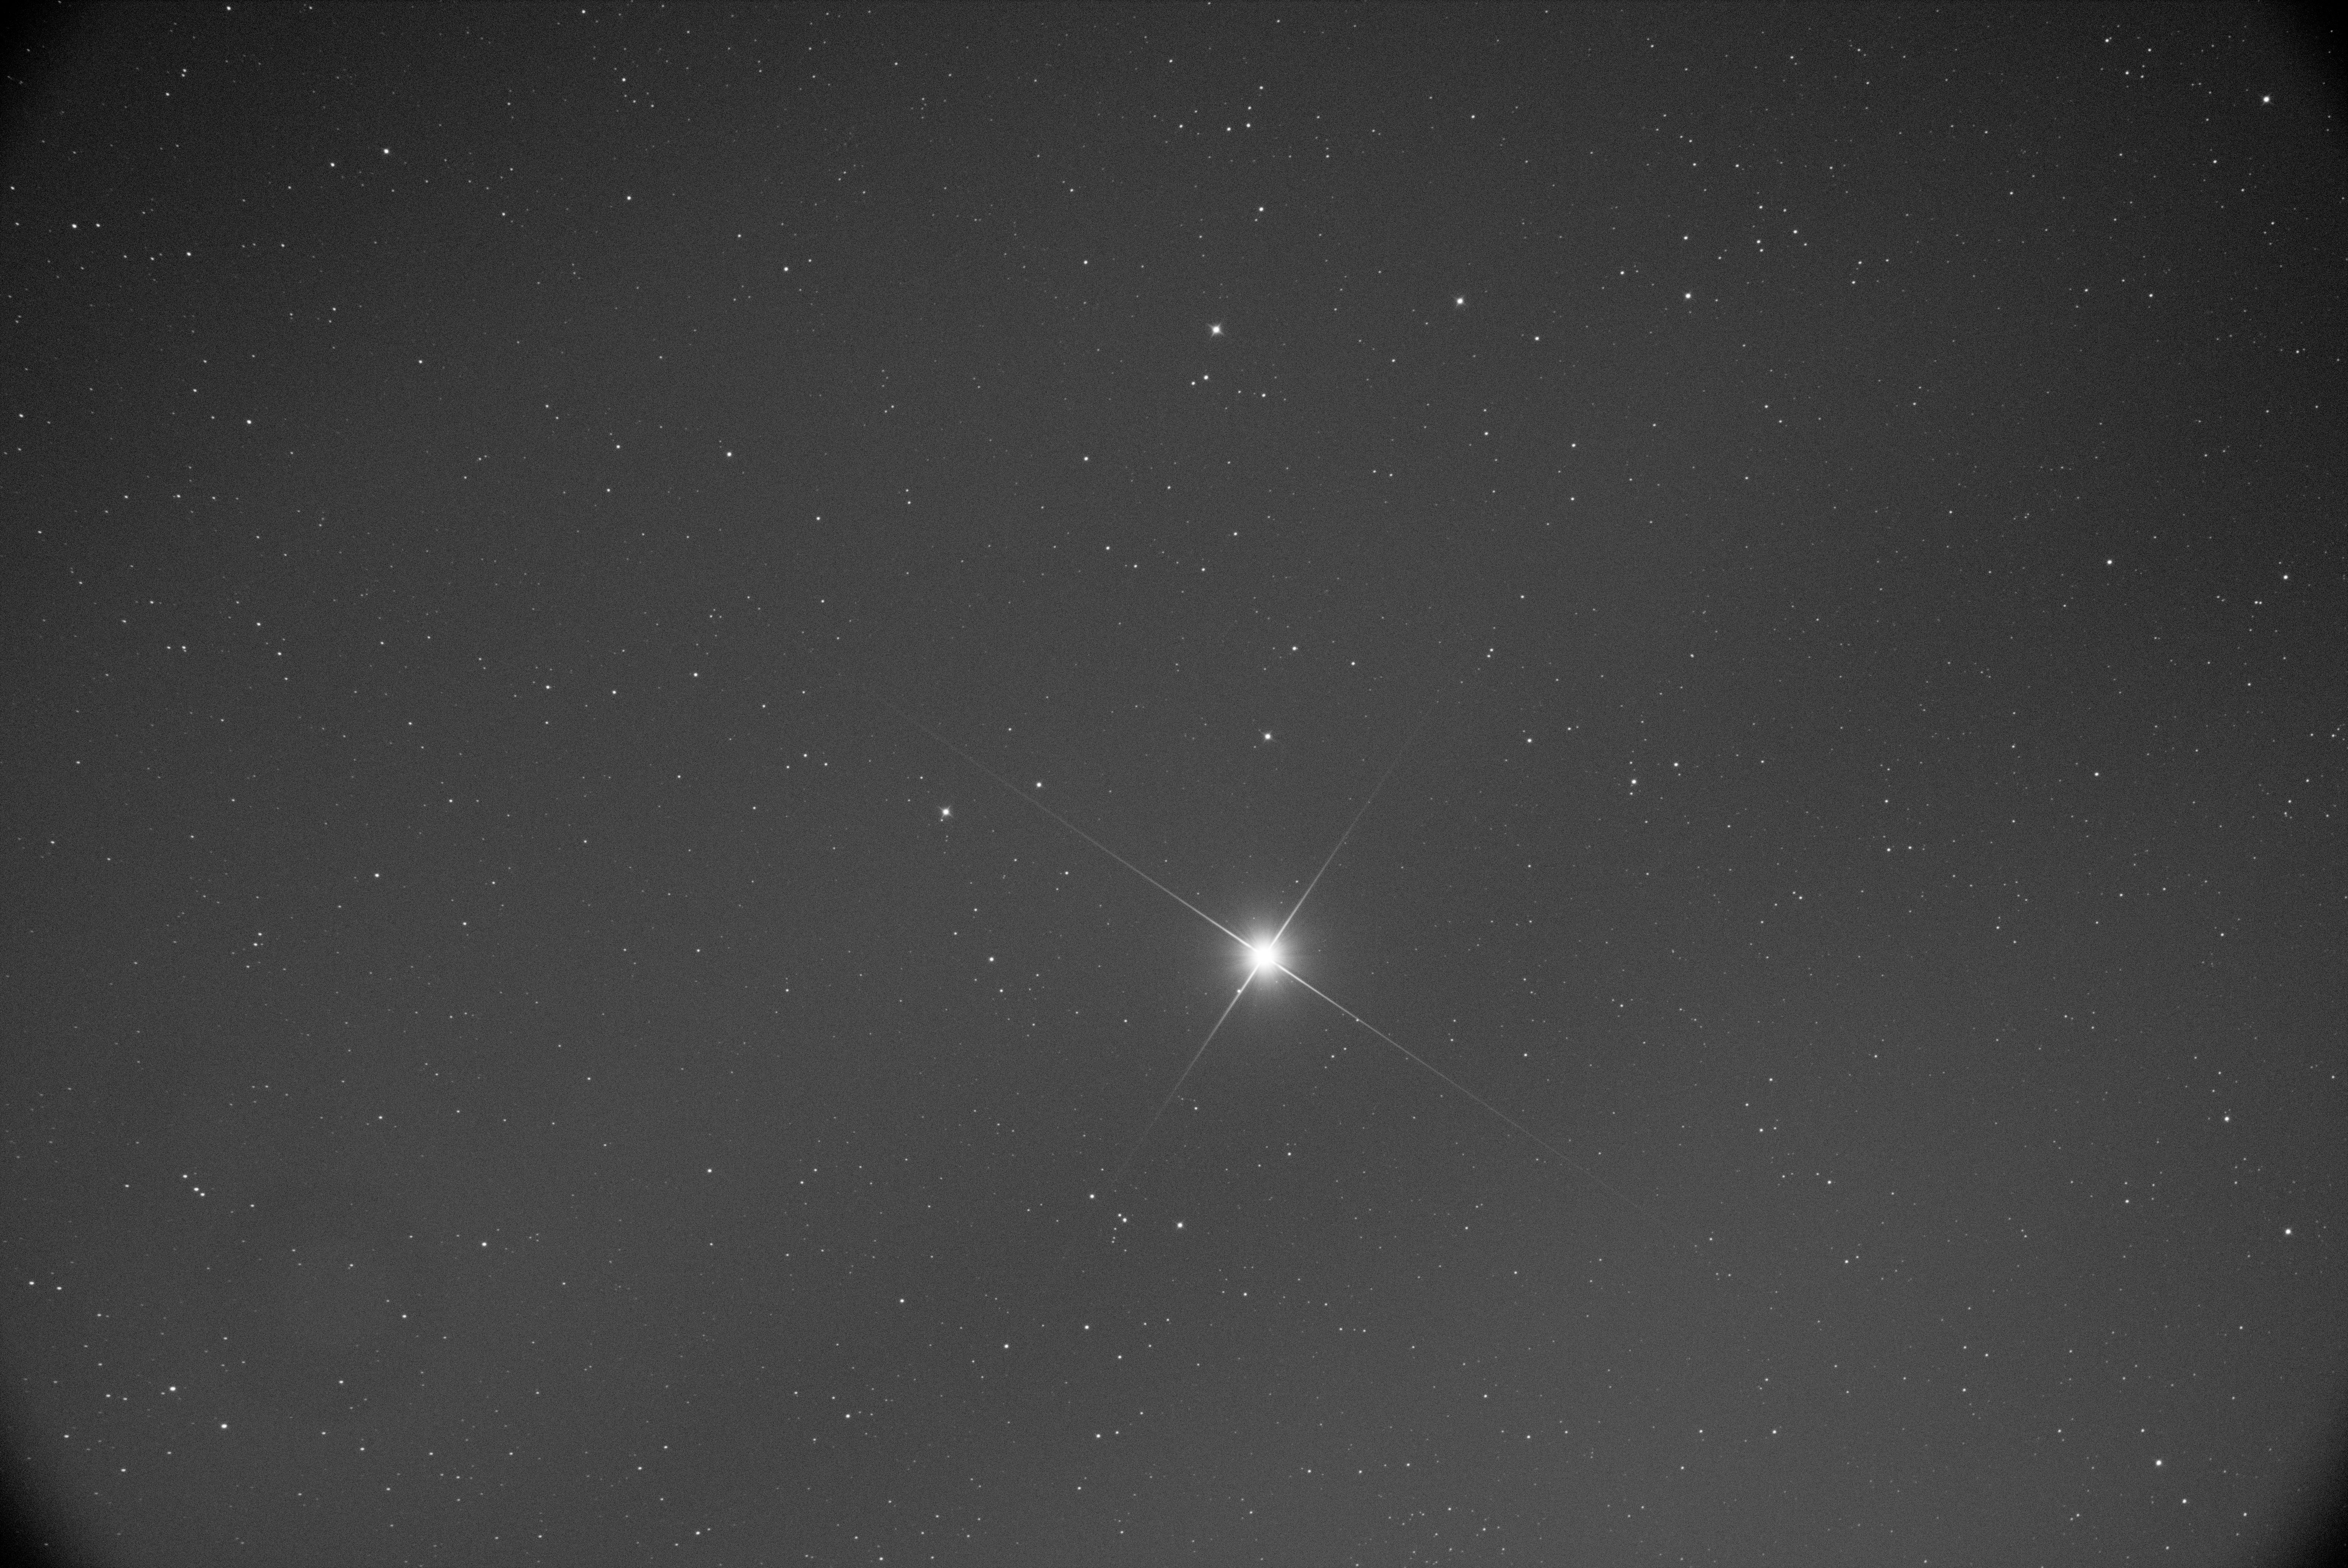 Réflecteur De Télescope Noir Sur Un Trépied Dans La Scène étoilée Du Ciel  Photo stock - Image du astronomie, réflecteur: 218744202